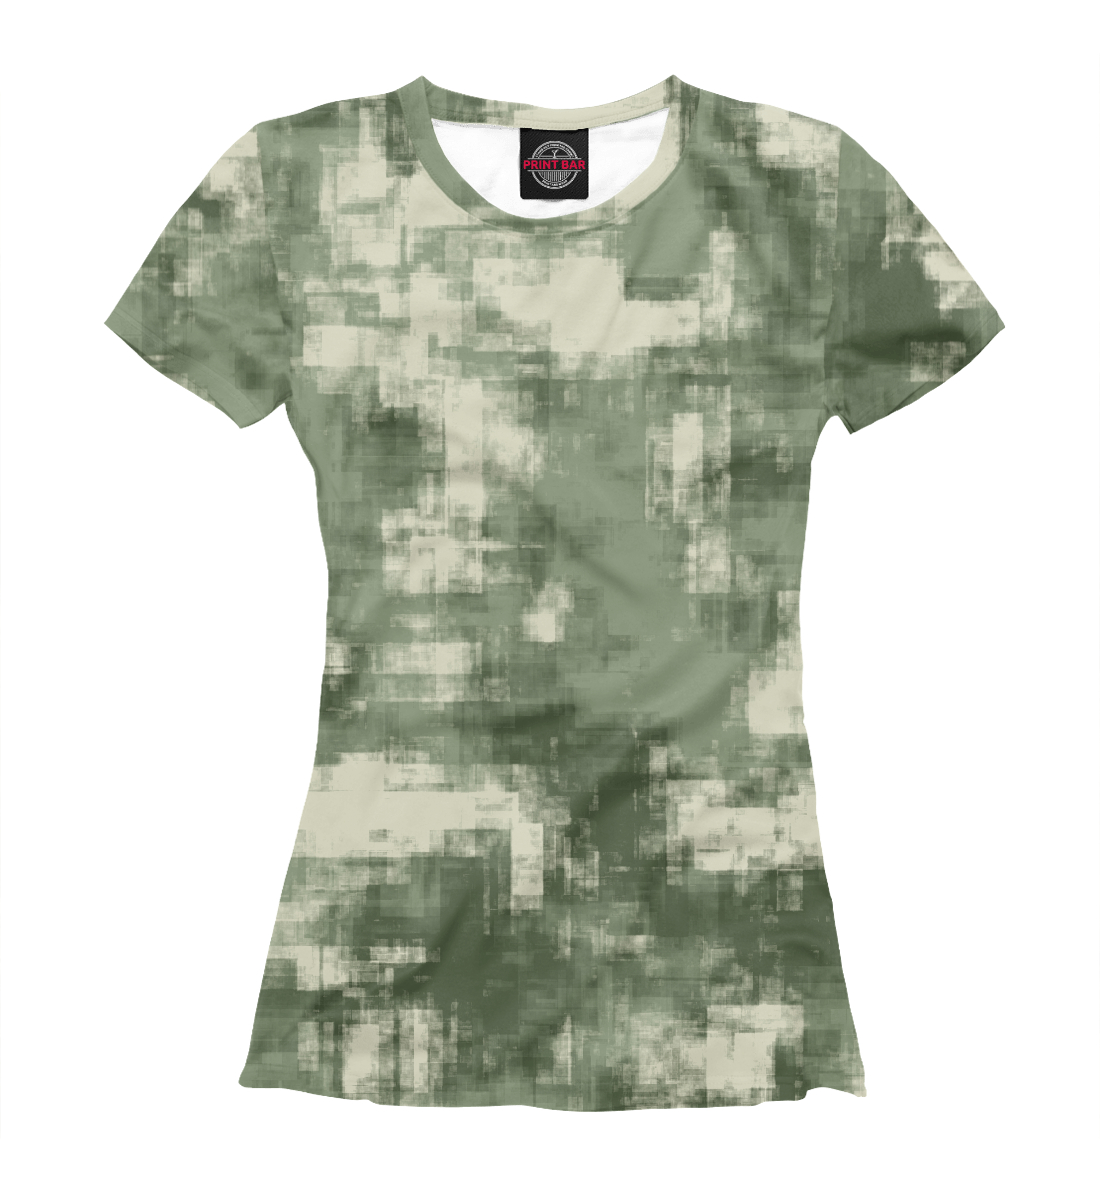 Футболка Военный камуфляж- одежда для мужчин и женщин для девочек, артикул: CMF-442561-fut-1mp